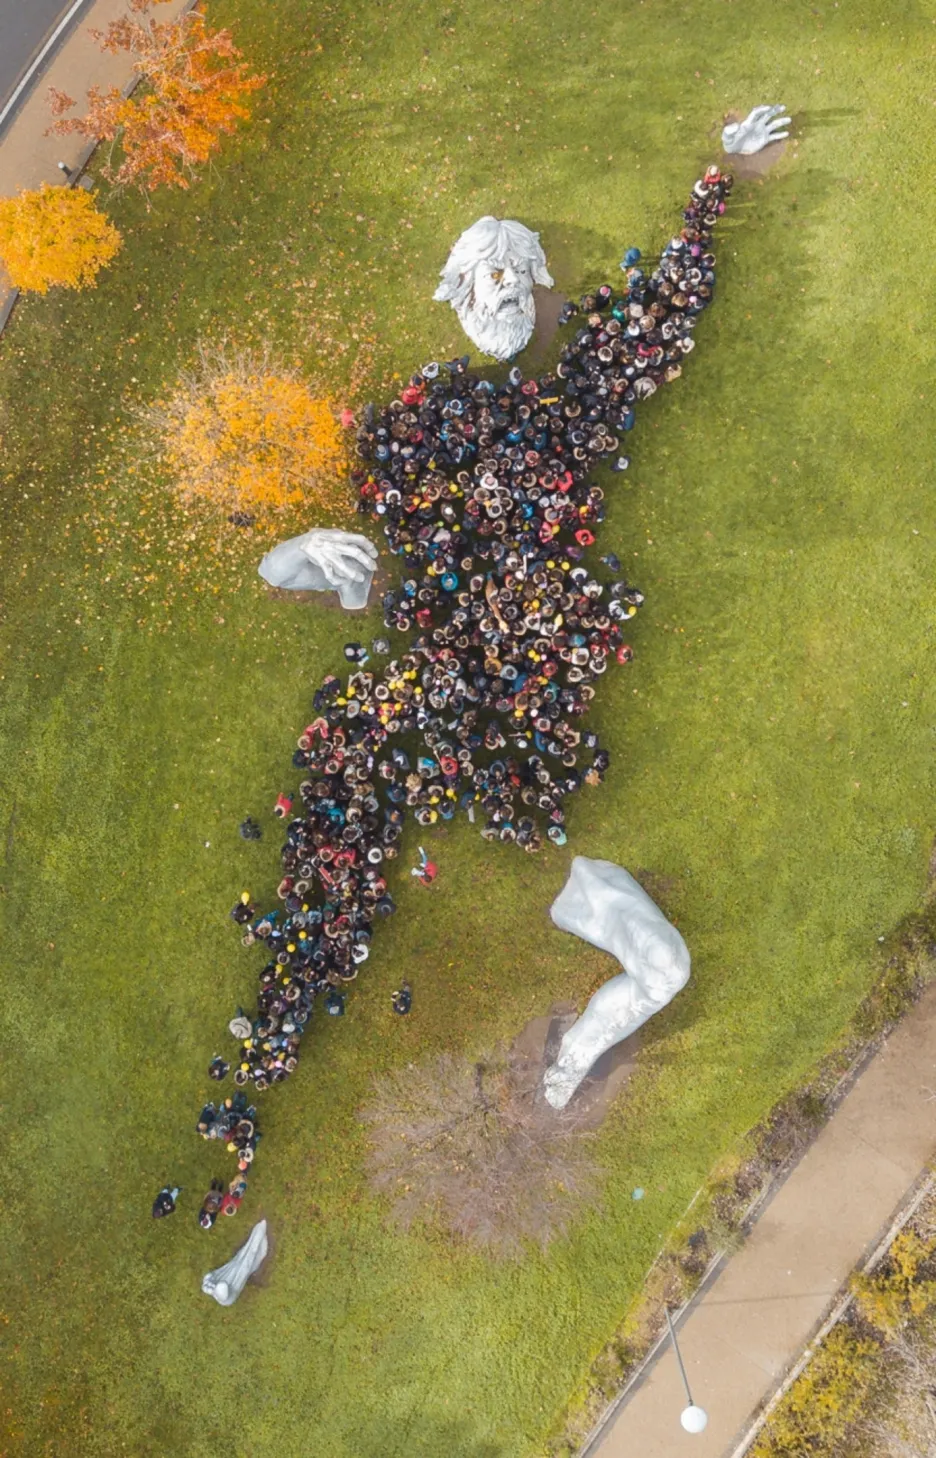 Fotografie „Human Giant“ od Bruna Sistiho sice vítězná nebyla, ale mezi návštěvníky získala velký obdiv